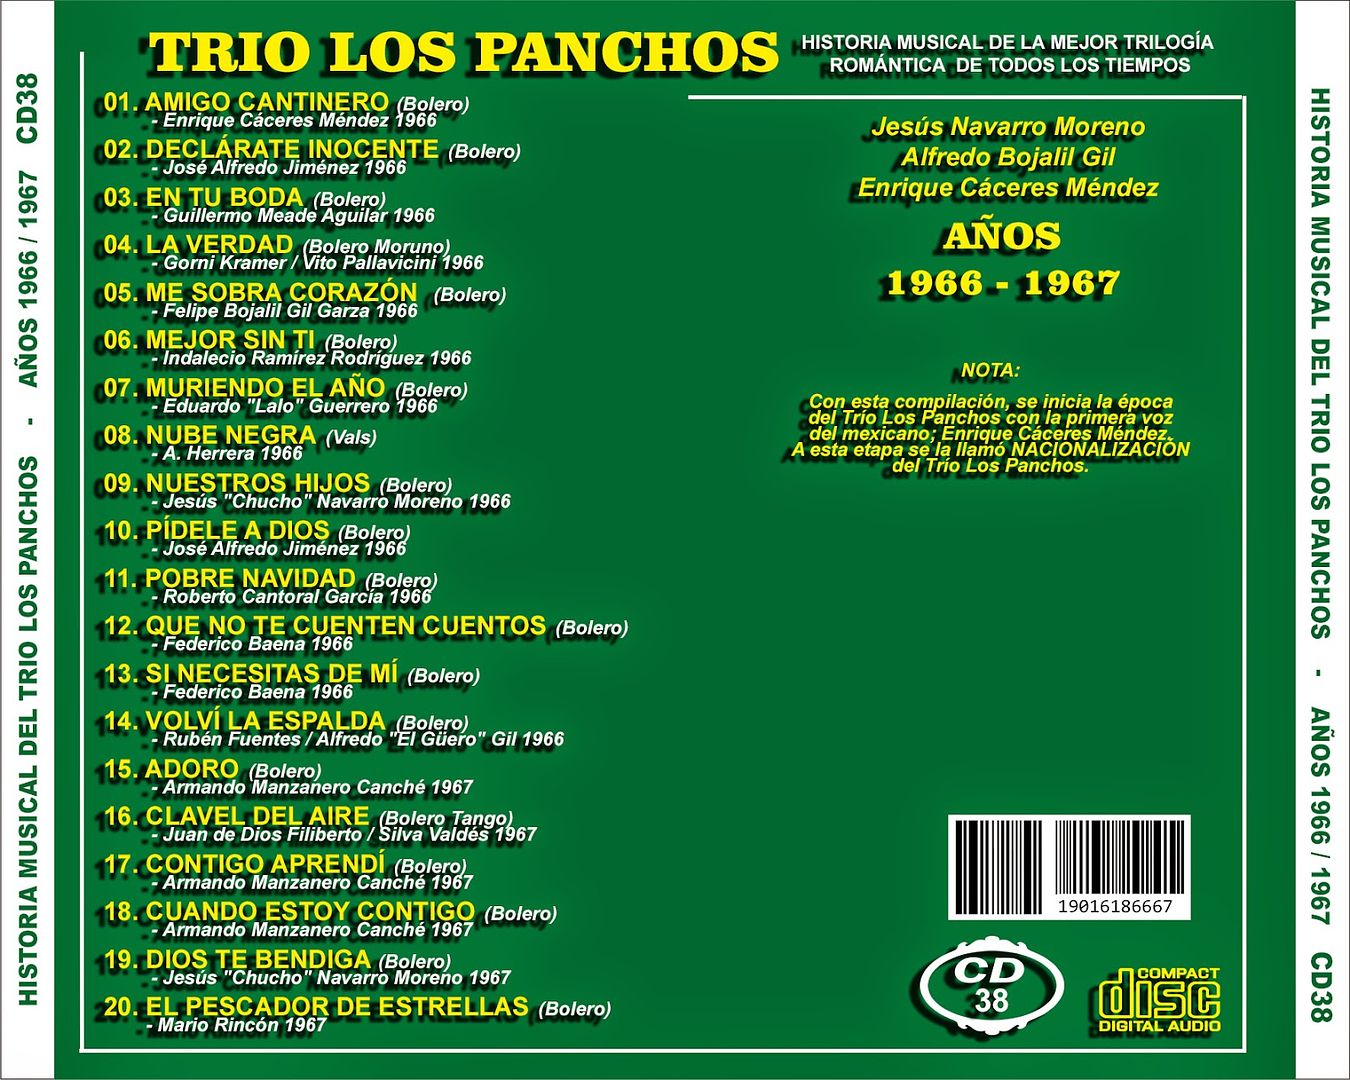 TrC3ADo2BLos2BPanchos2B 2BHistoria2BMusical2BCD382B 2BBack - Trío Los Panchos - Historia Musical CD38